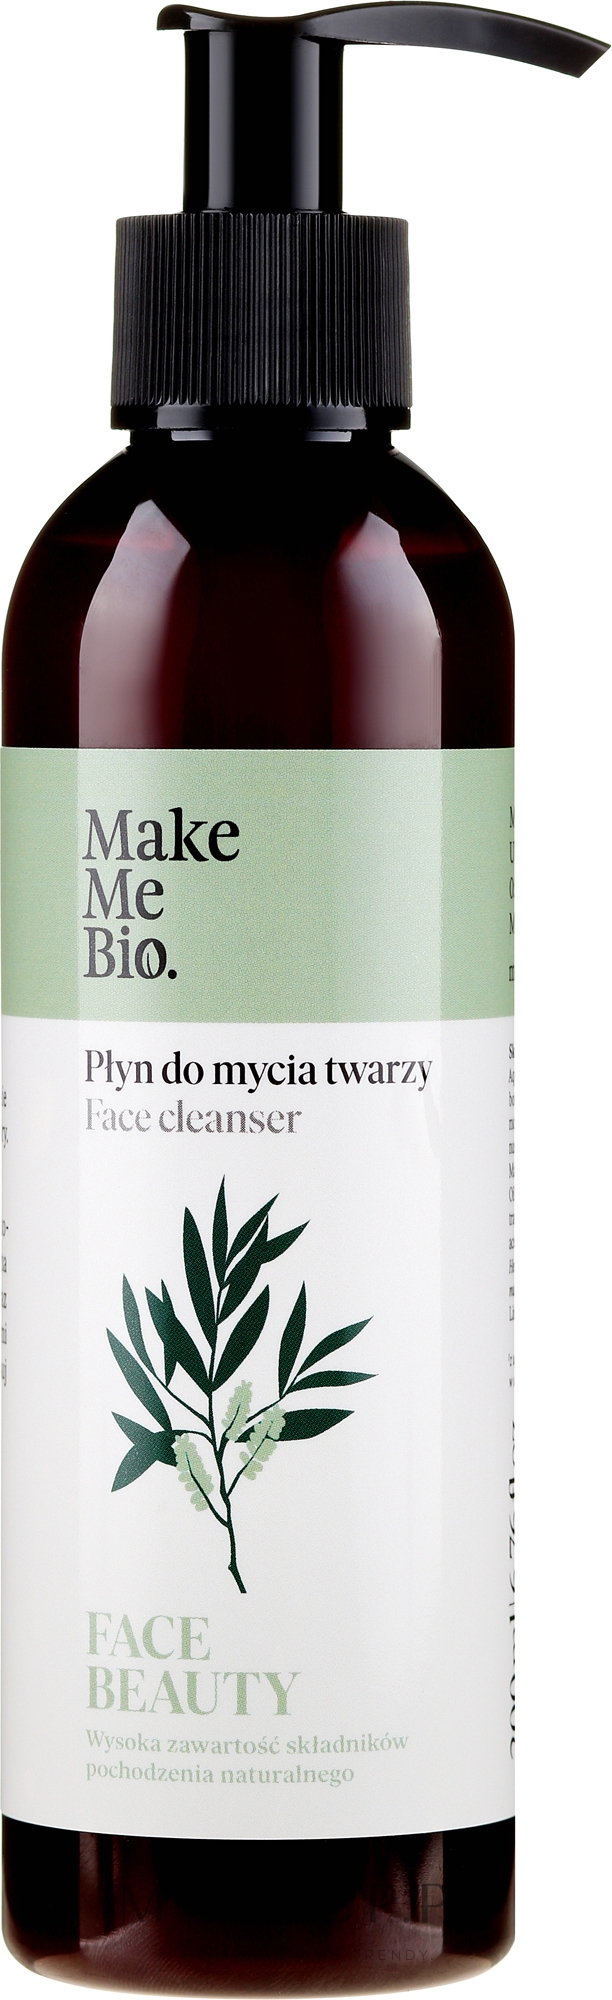 Odżywczy płyn do mycia twarzy Drzewo herbaciane - Make Me Bio Face Beauty — Zdjęcie 200 ml